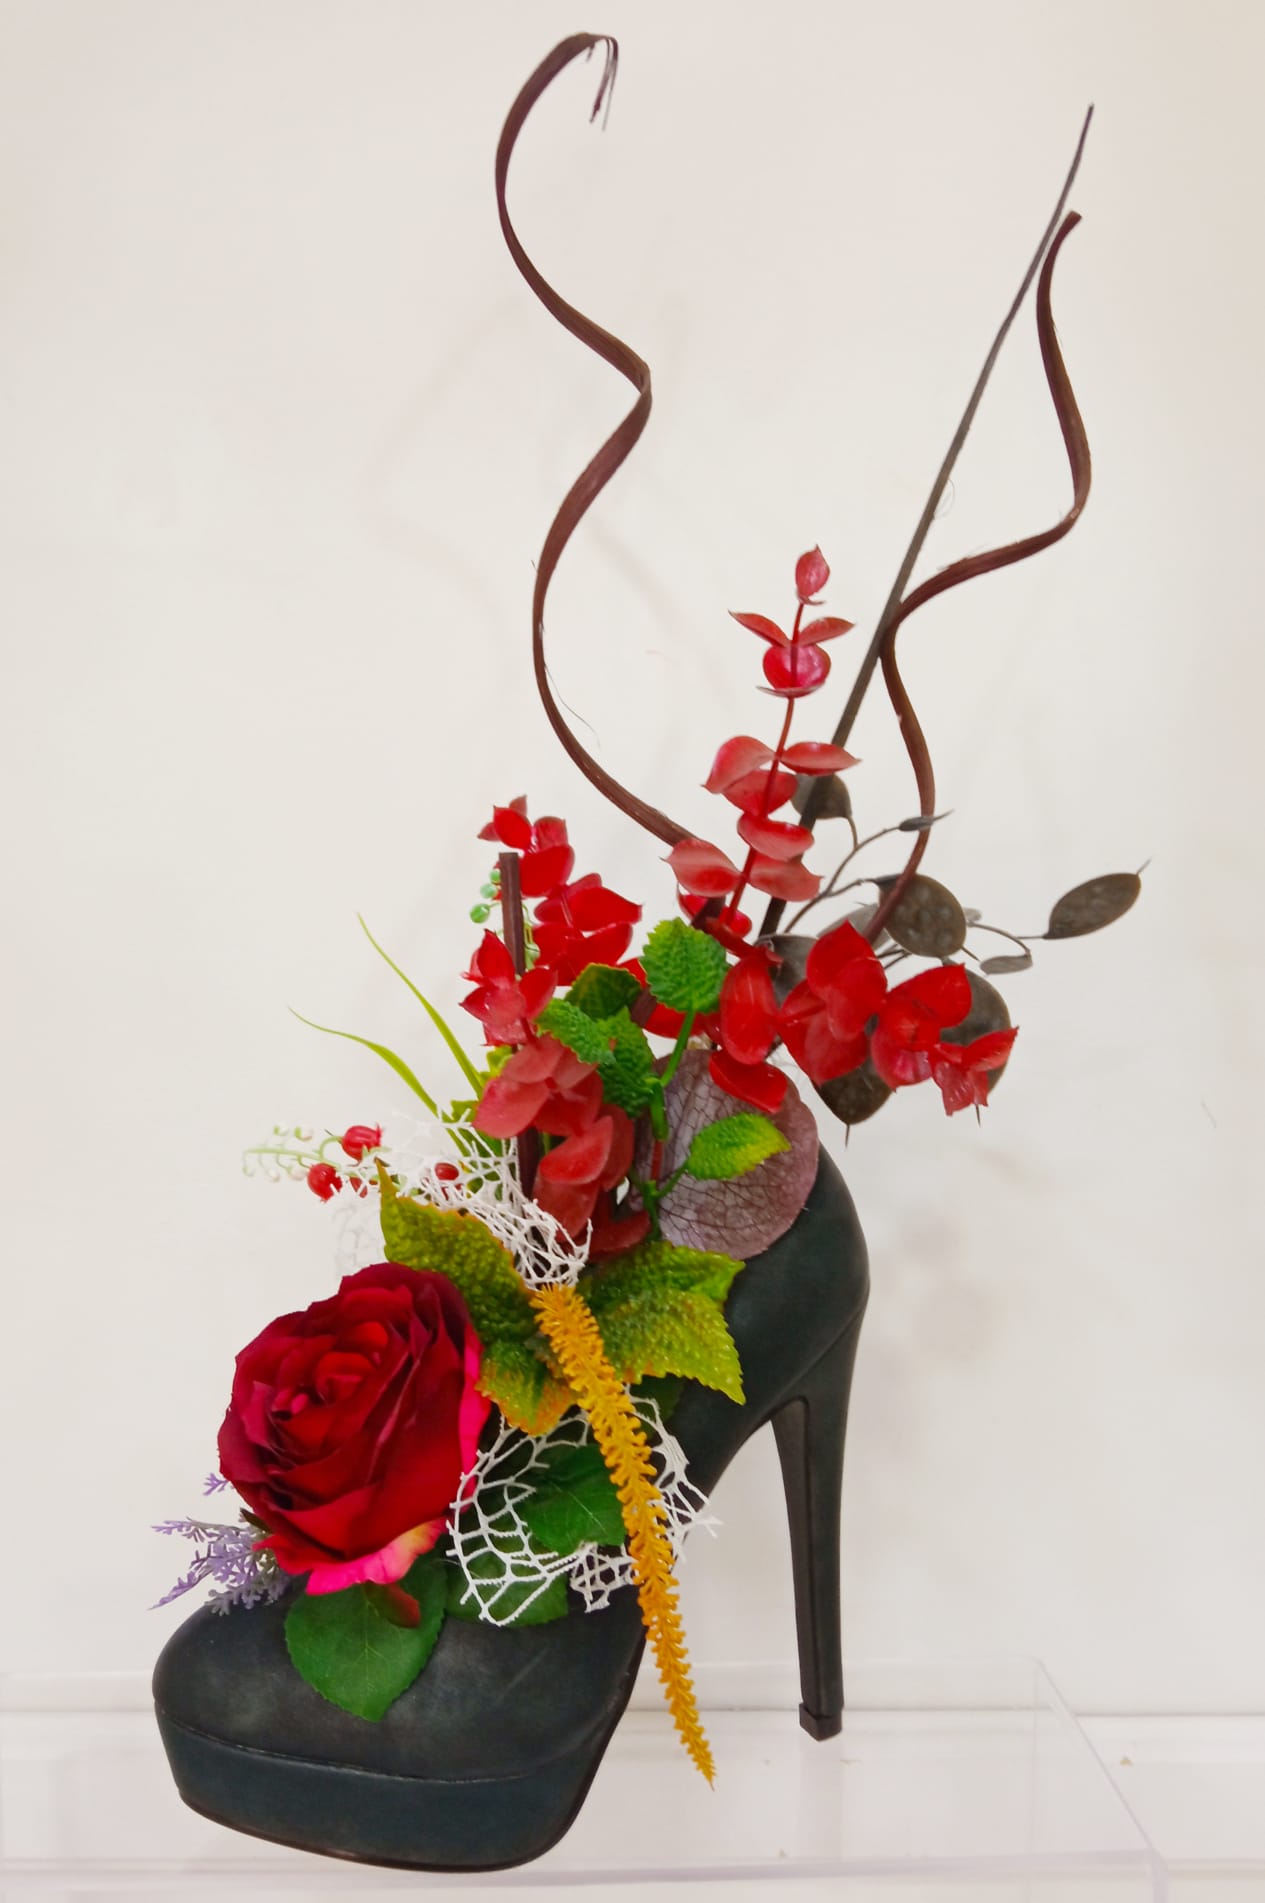 Zapato de tacón con flores. Regalos inolvidables - RF00825